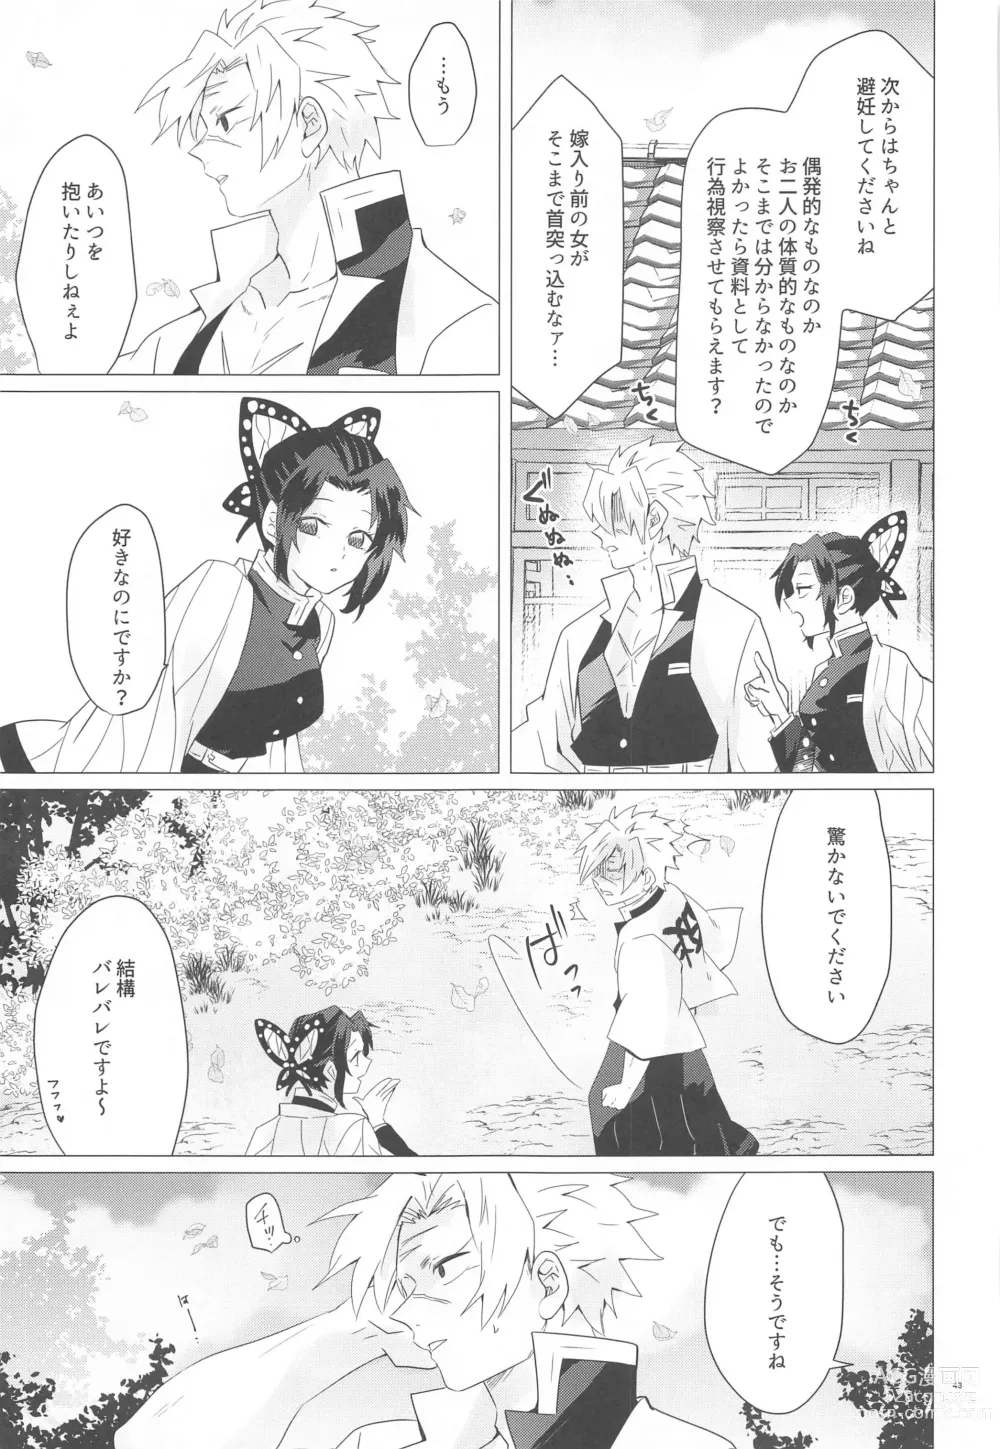 Page 42 of doujinshi Magamaga